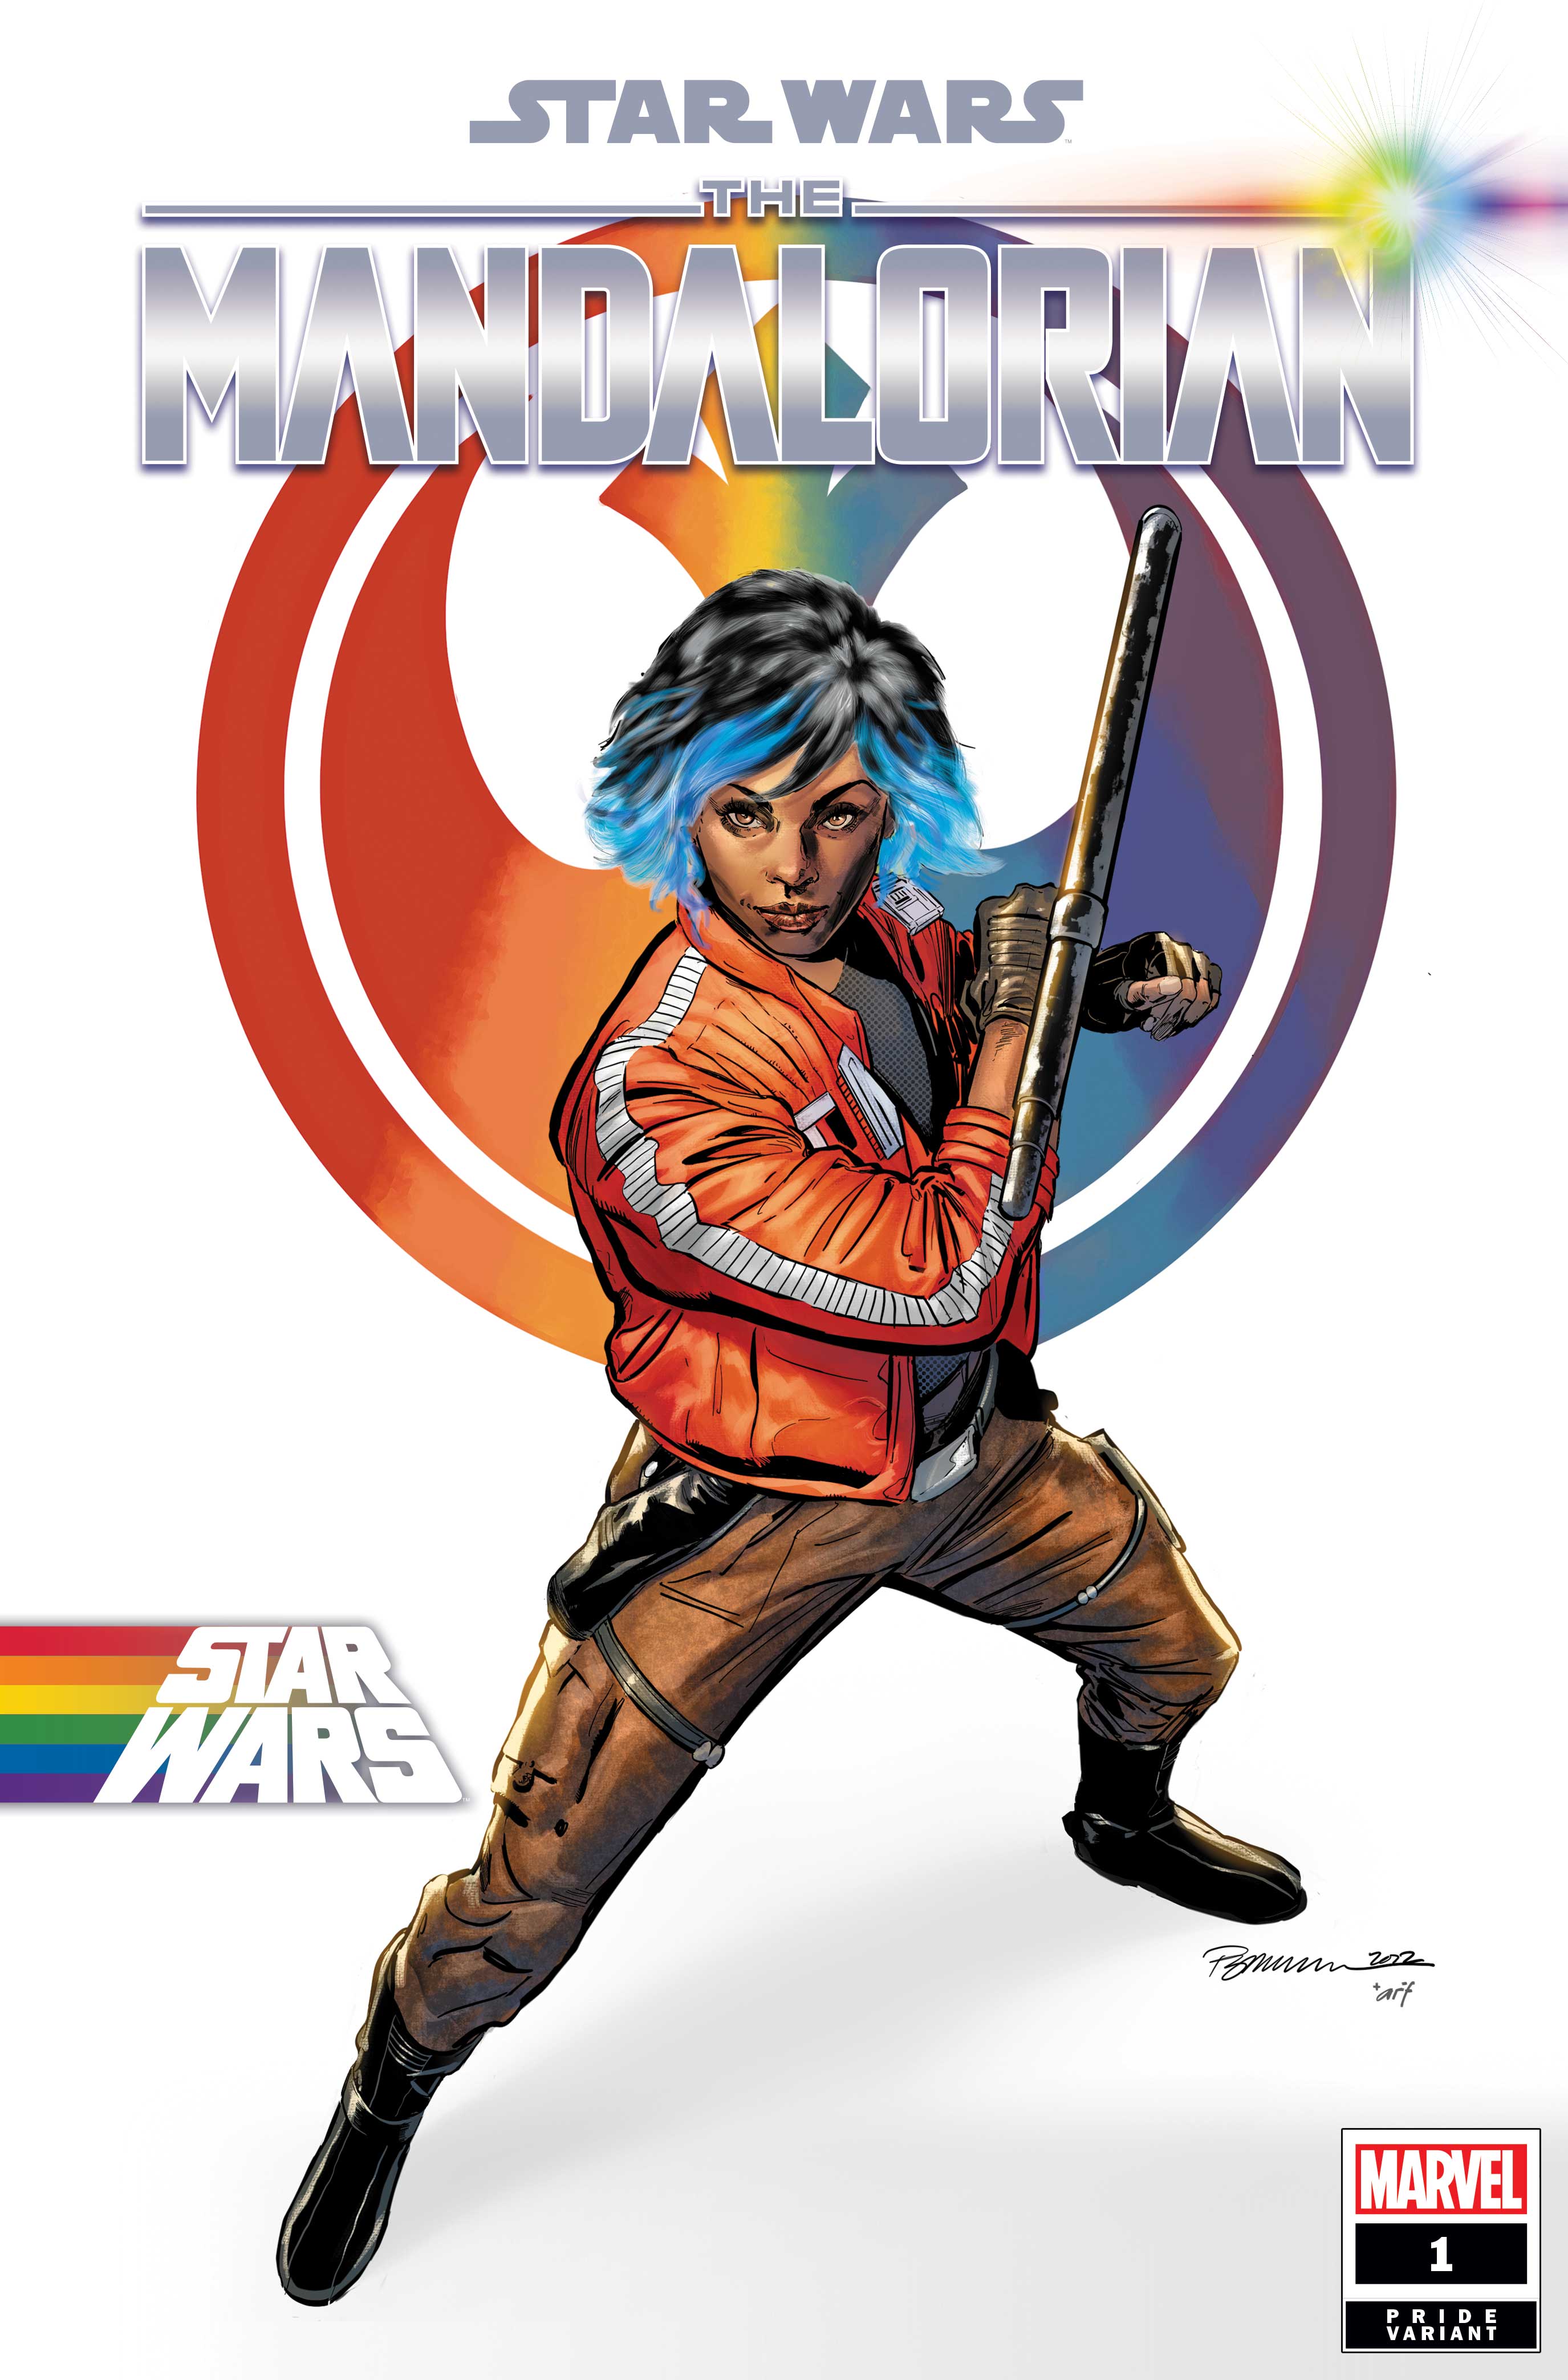 Portada variante de Star Wars: The Mandalorian #1 Pride por Phil Jimenez y Arif Prianto